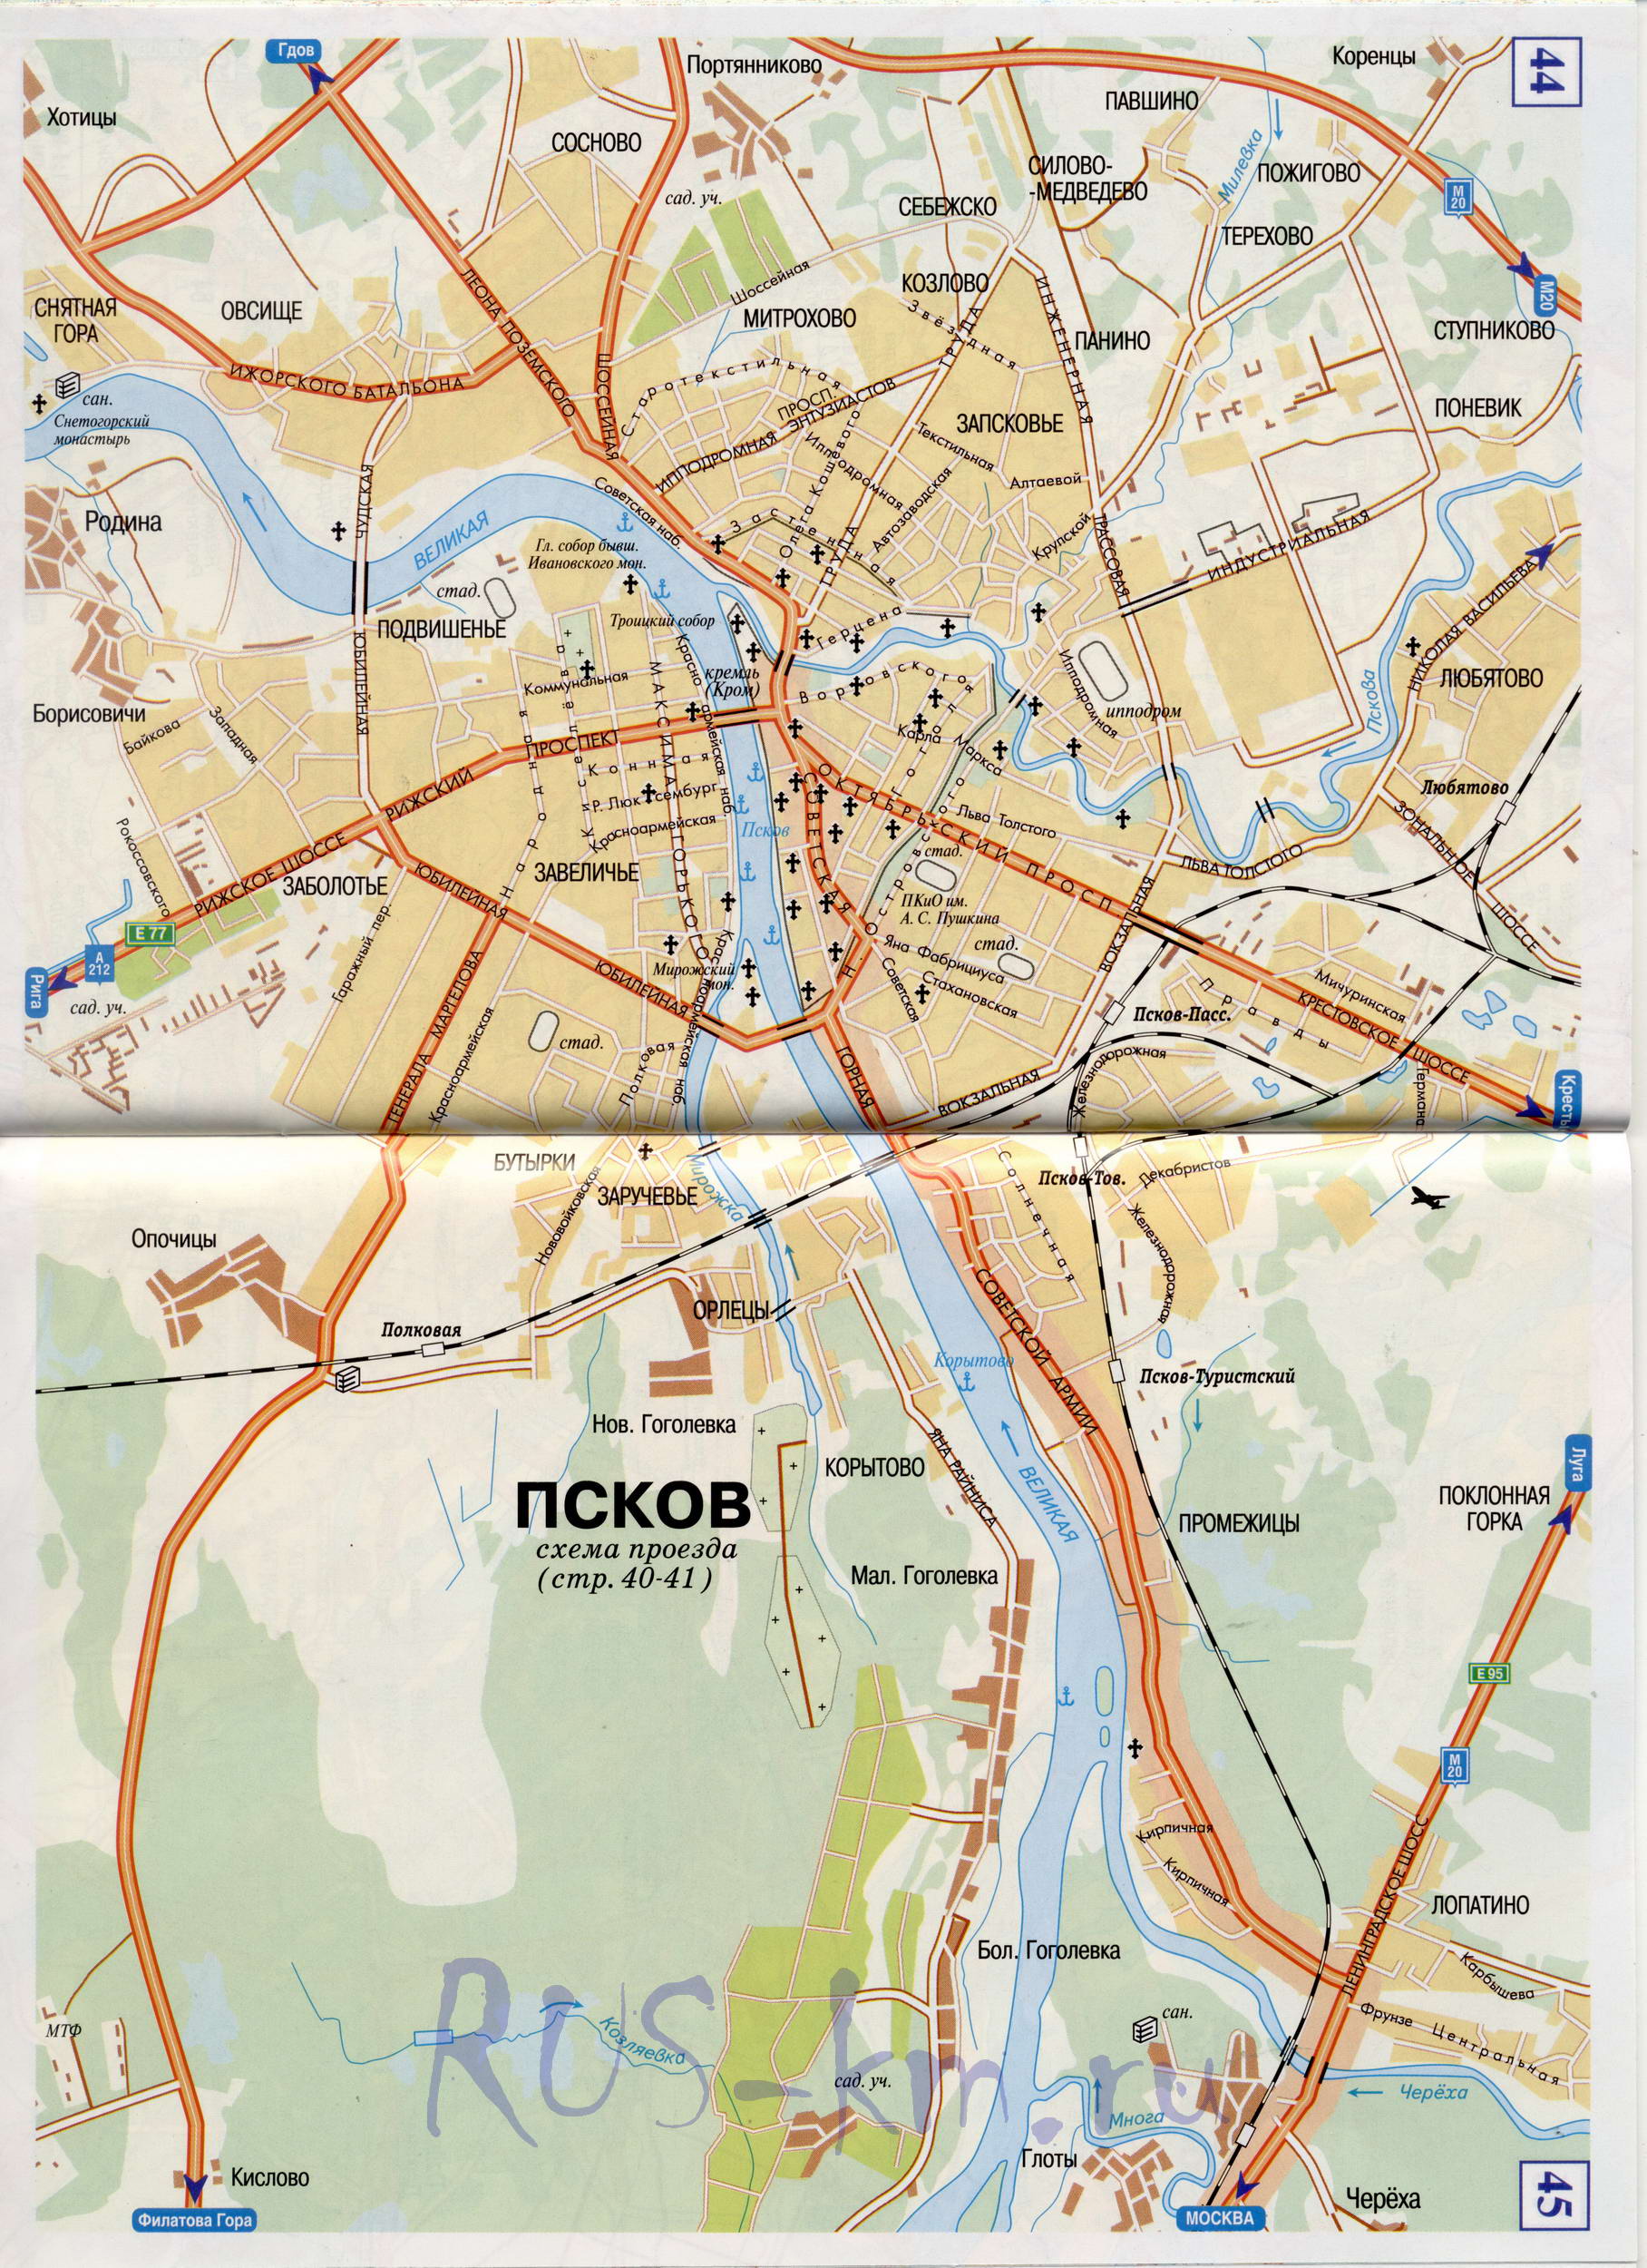 Карта Пскова автомобильная. Подробная карта Пскова с названиями улиц и схемой проезда автотранспорта, A0 - 